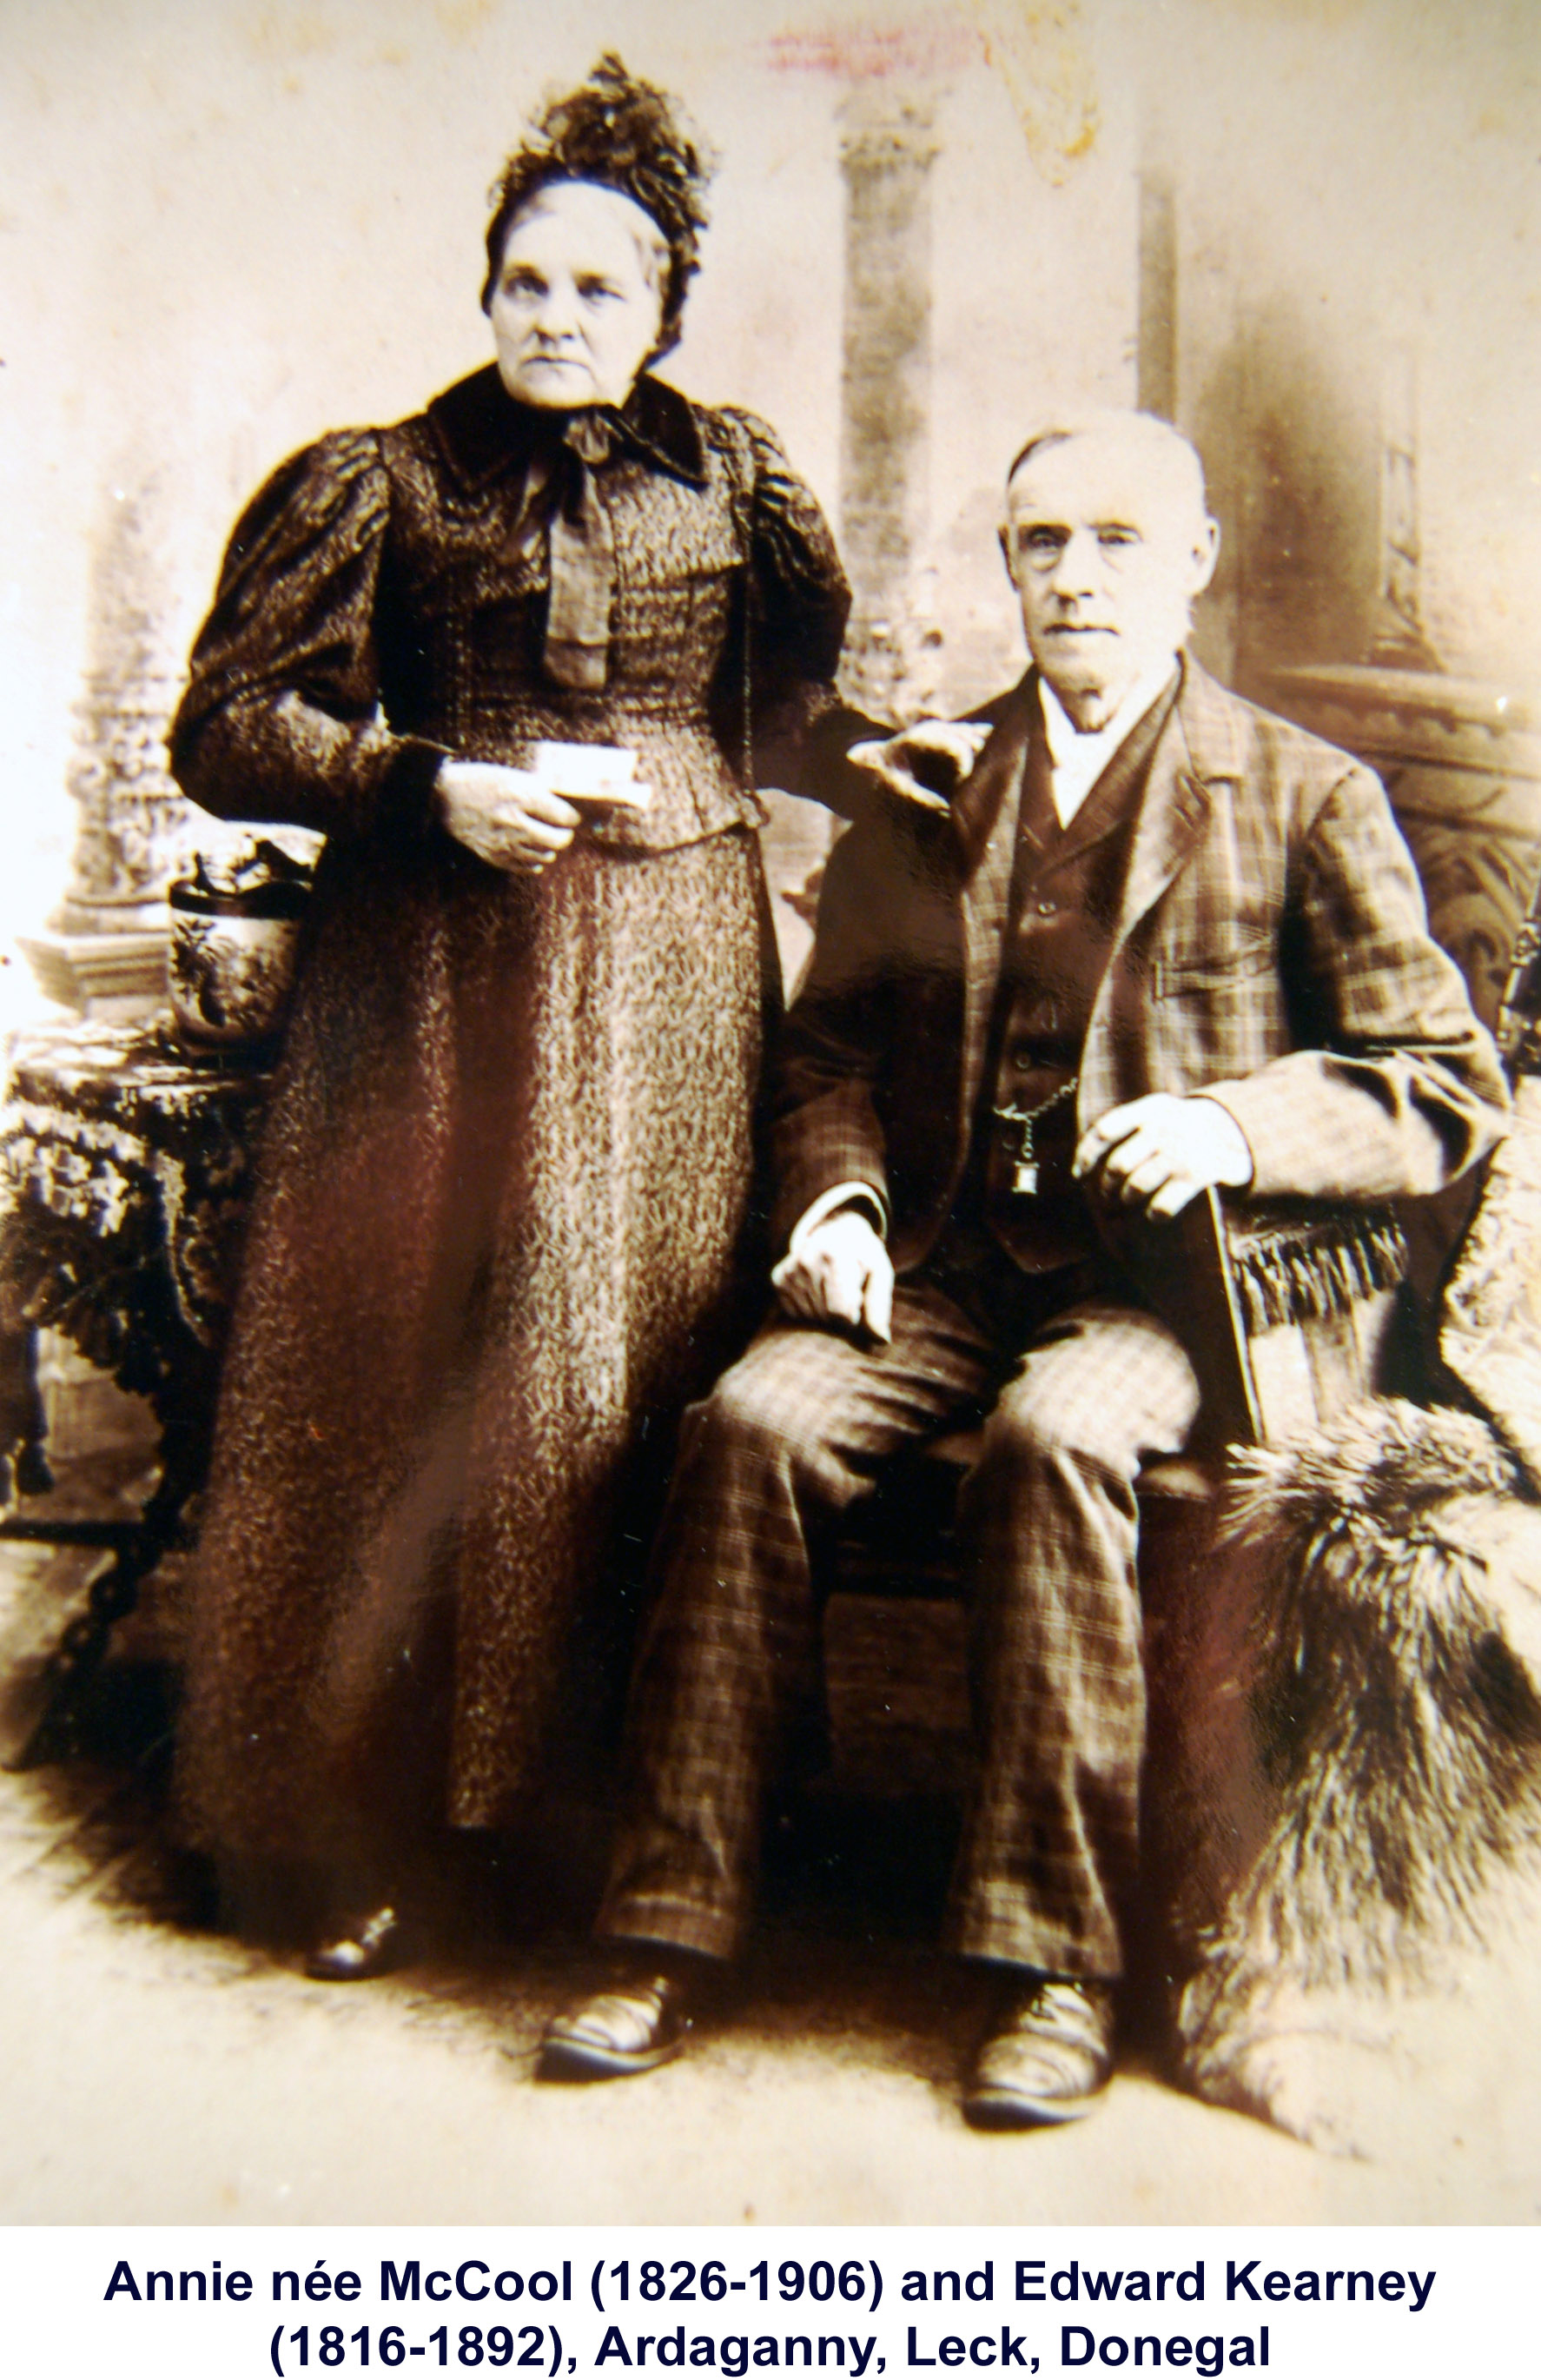 Edward and Annie Kearney